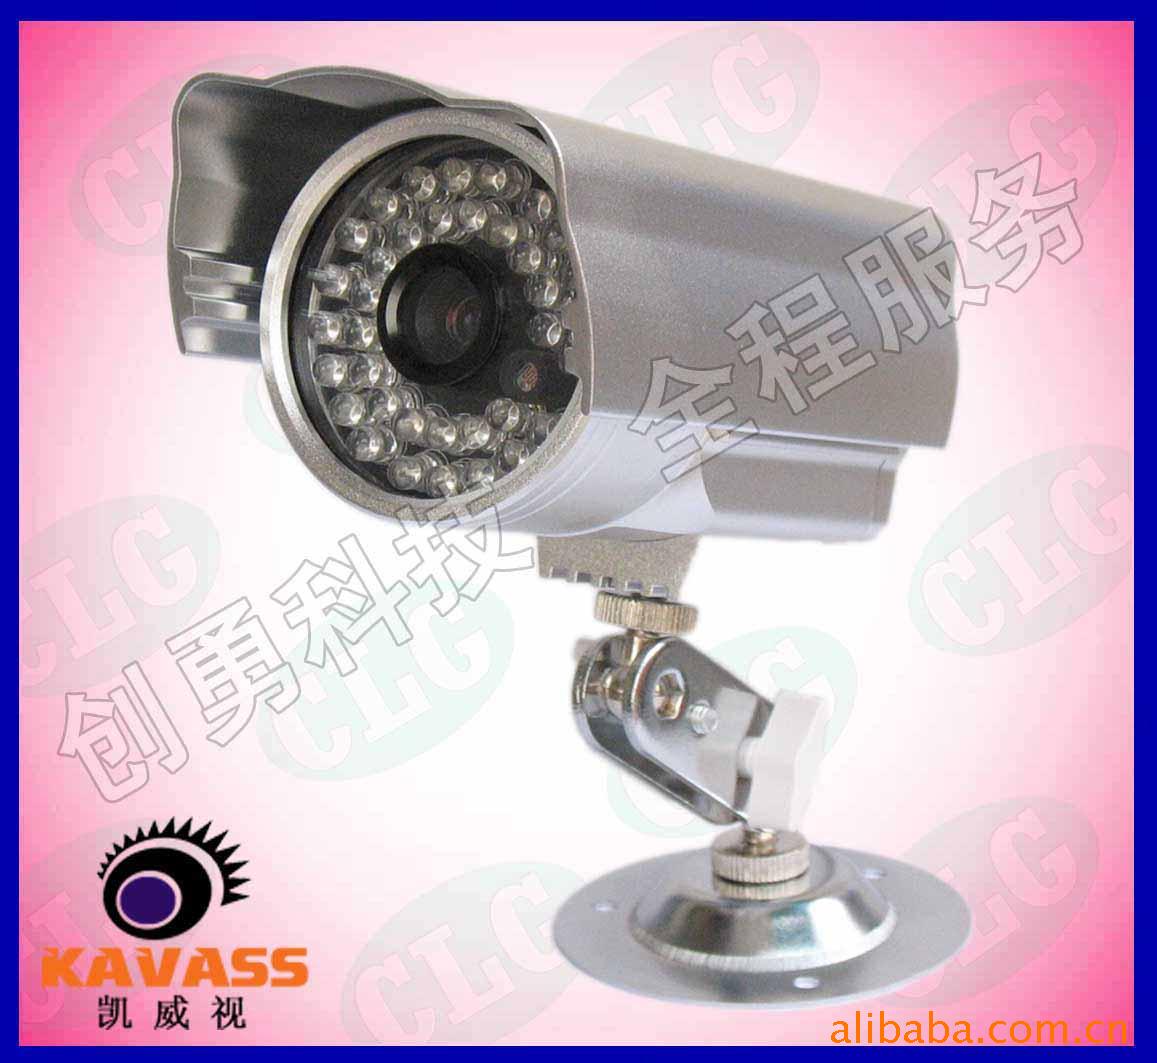 监控设备监控摄像机摄像头红外线摄像机监控器材信息